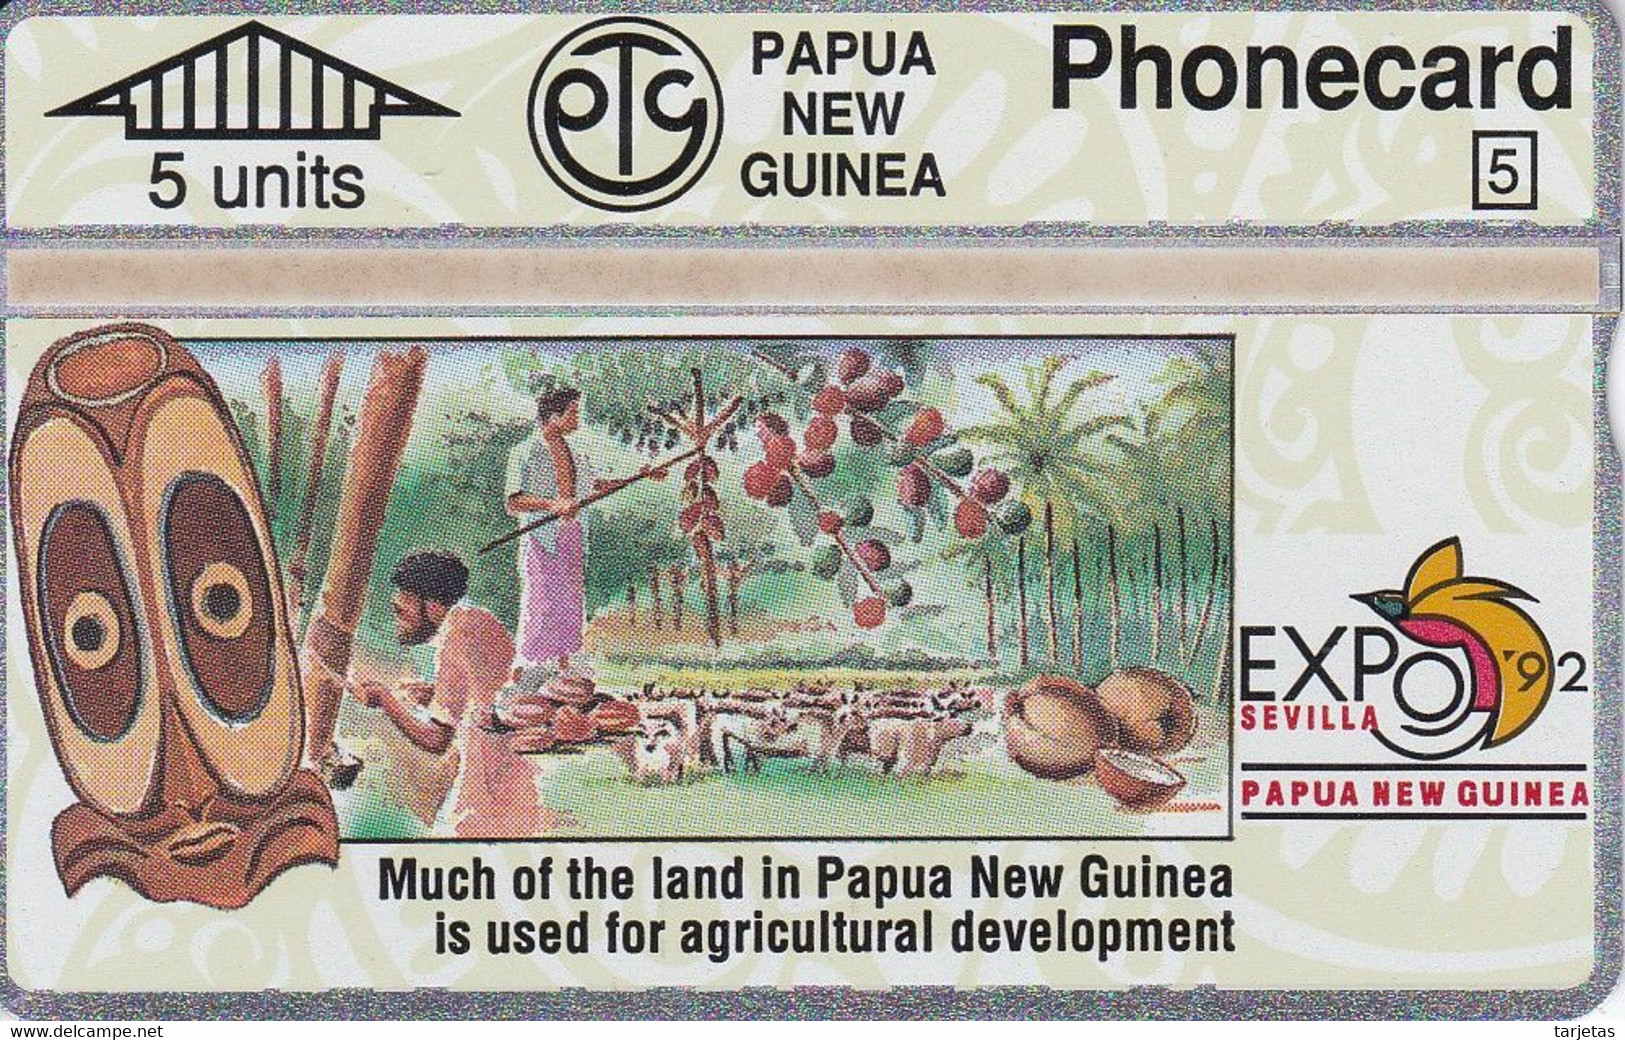 TARJETA DE PAPUA Y NUEVA GUINEA EXPO 92 SEVILLA (203A) (NUEVA-MINT) - Papouasie-Nouvelle-Guinée